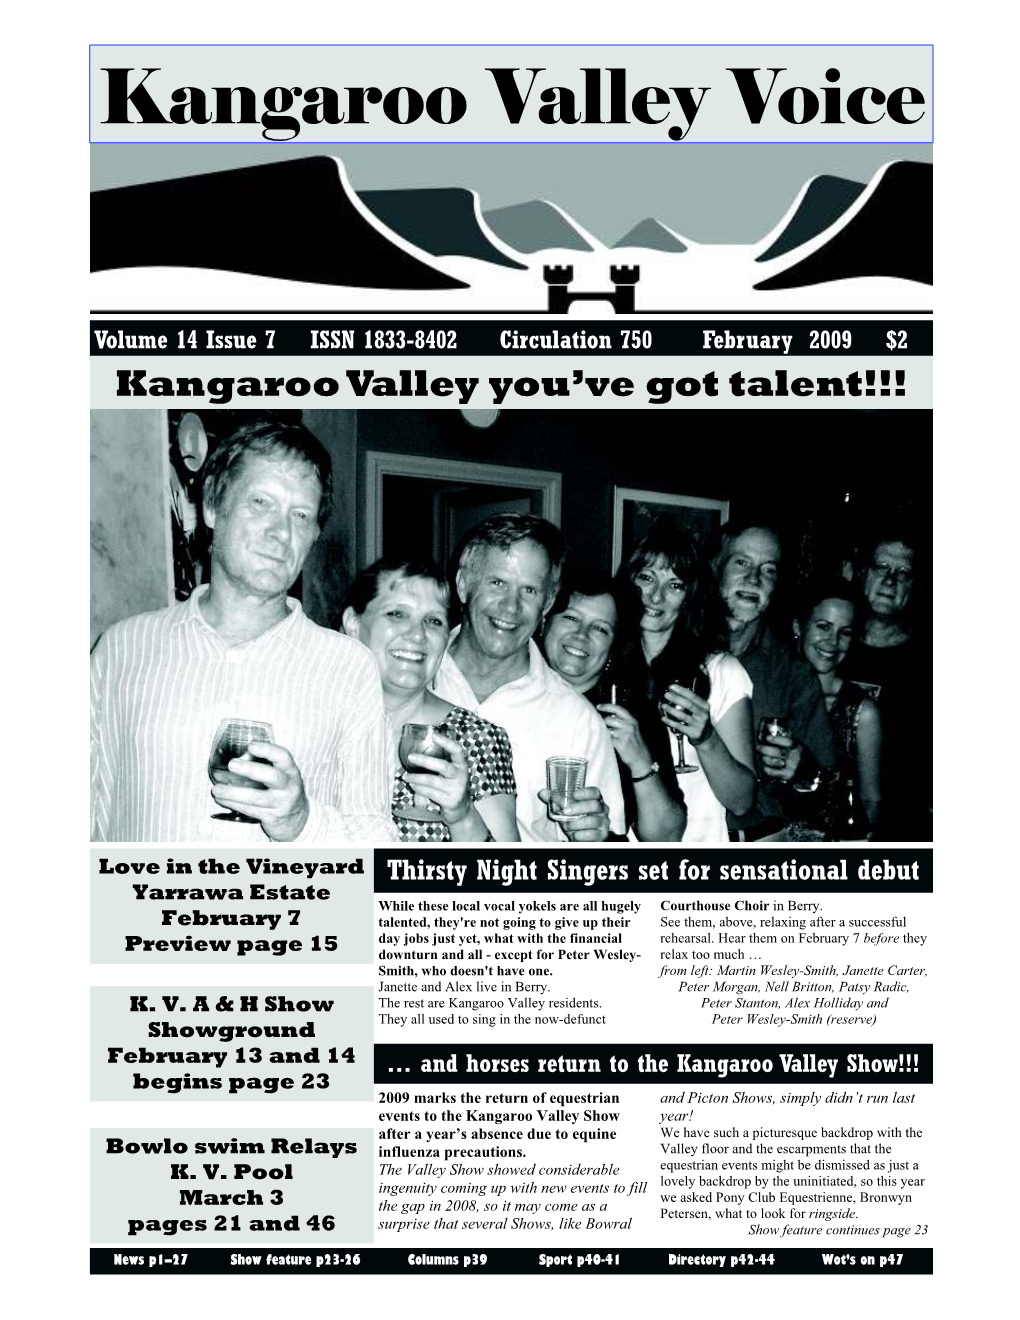 Kangaroo Valley Voice Page 1 Kangaroo Valley Voice